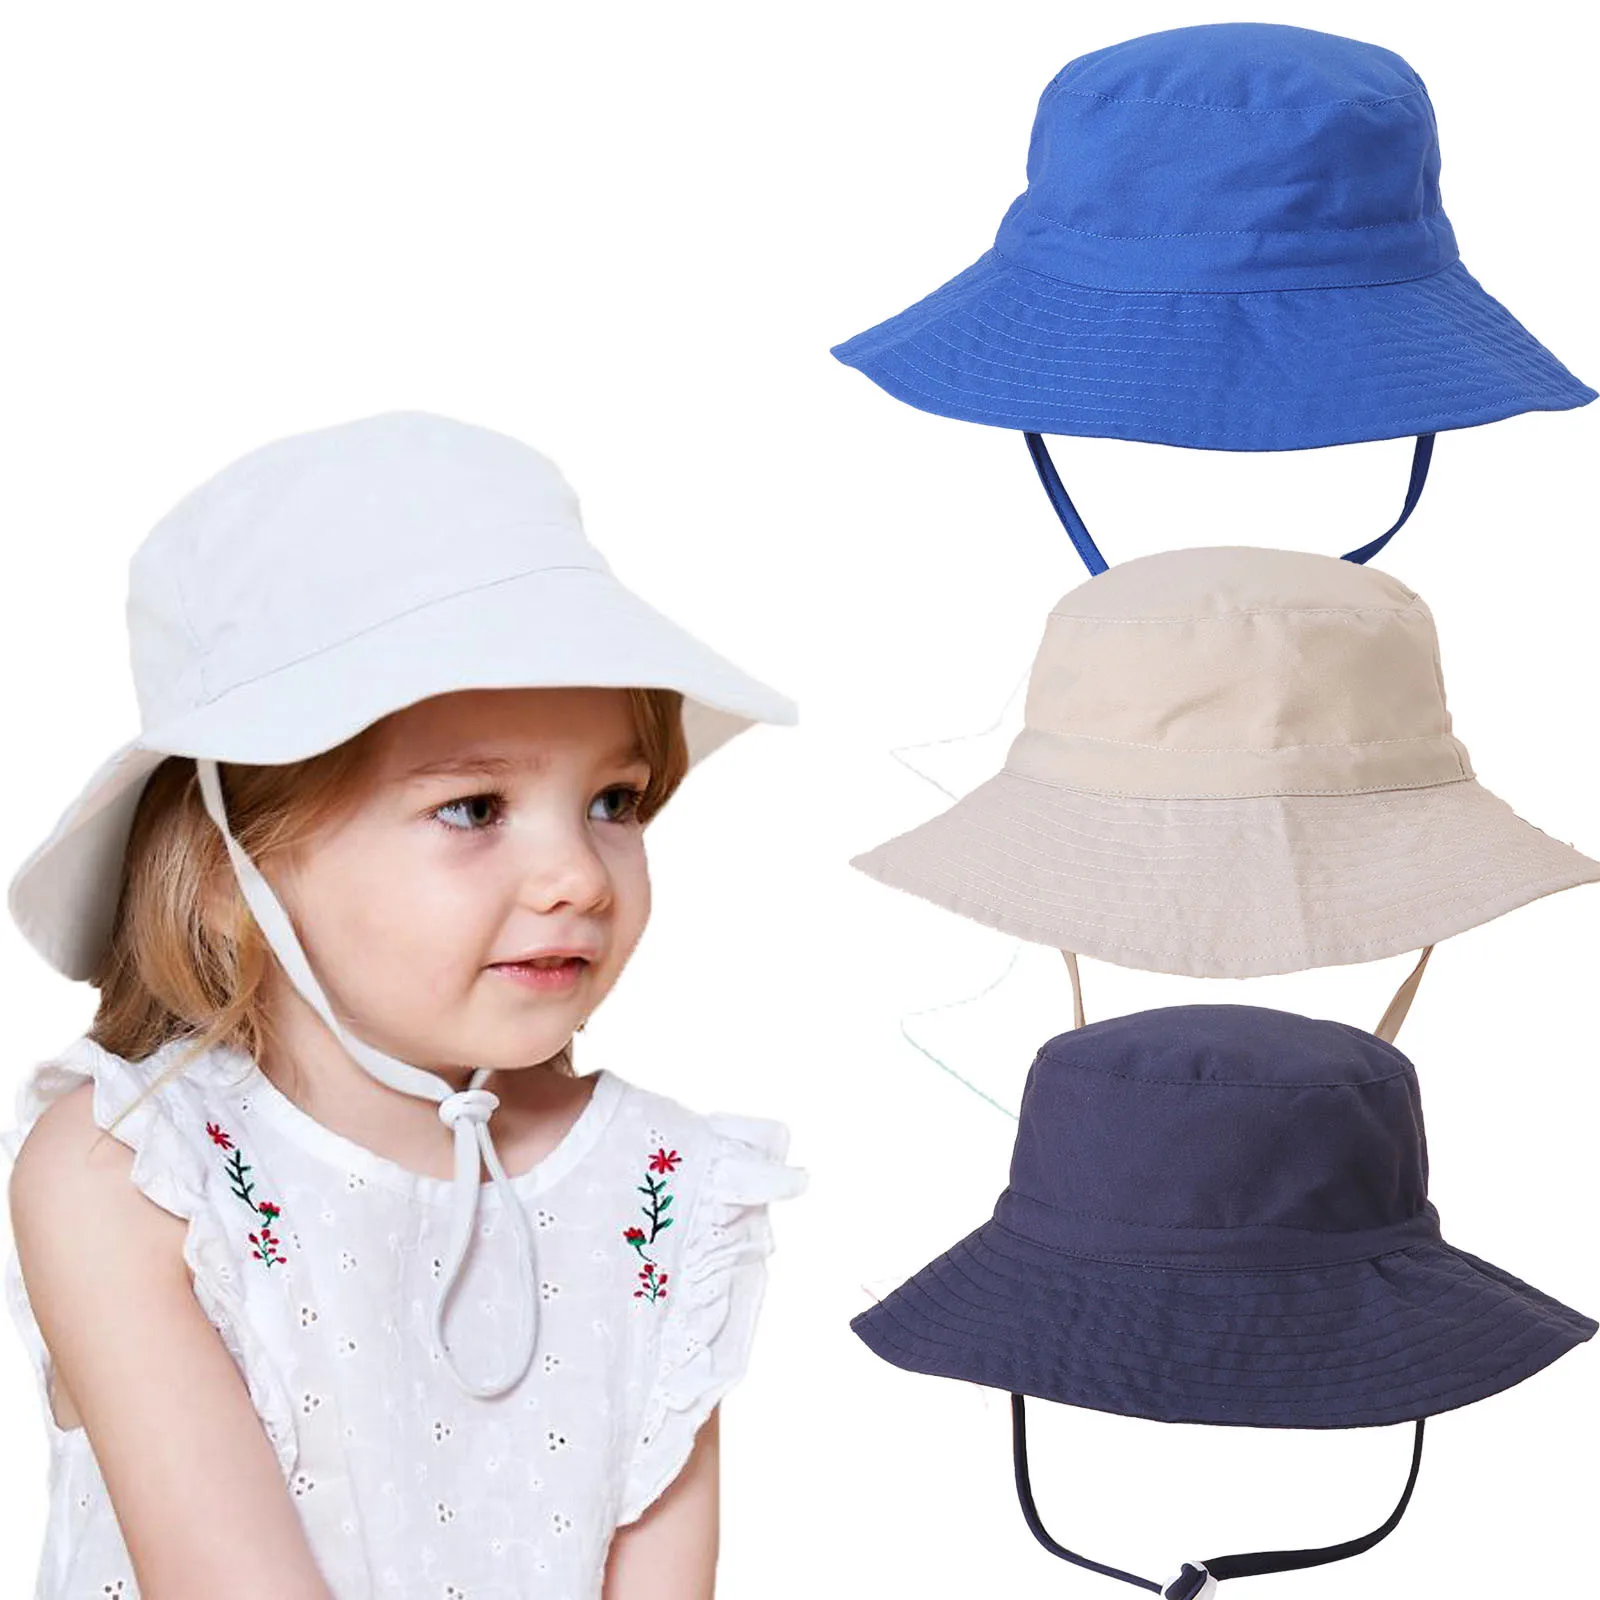 

0-10Y Children Summer Bucket Hat Basin Caps Toddler Kids Baby Boys Girls Solid Sunscreen Cap Baby Hat Fisherman Cap панама L*